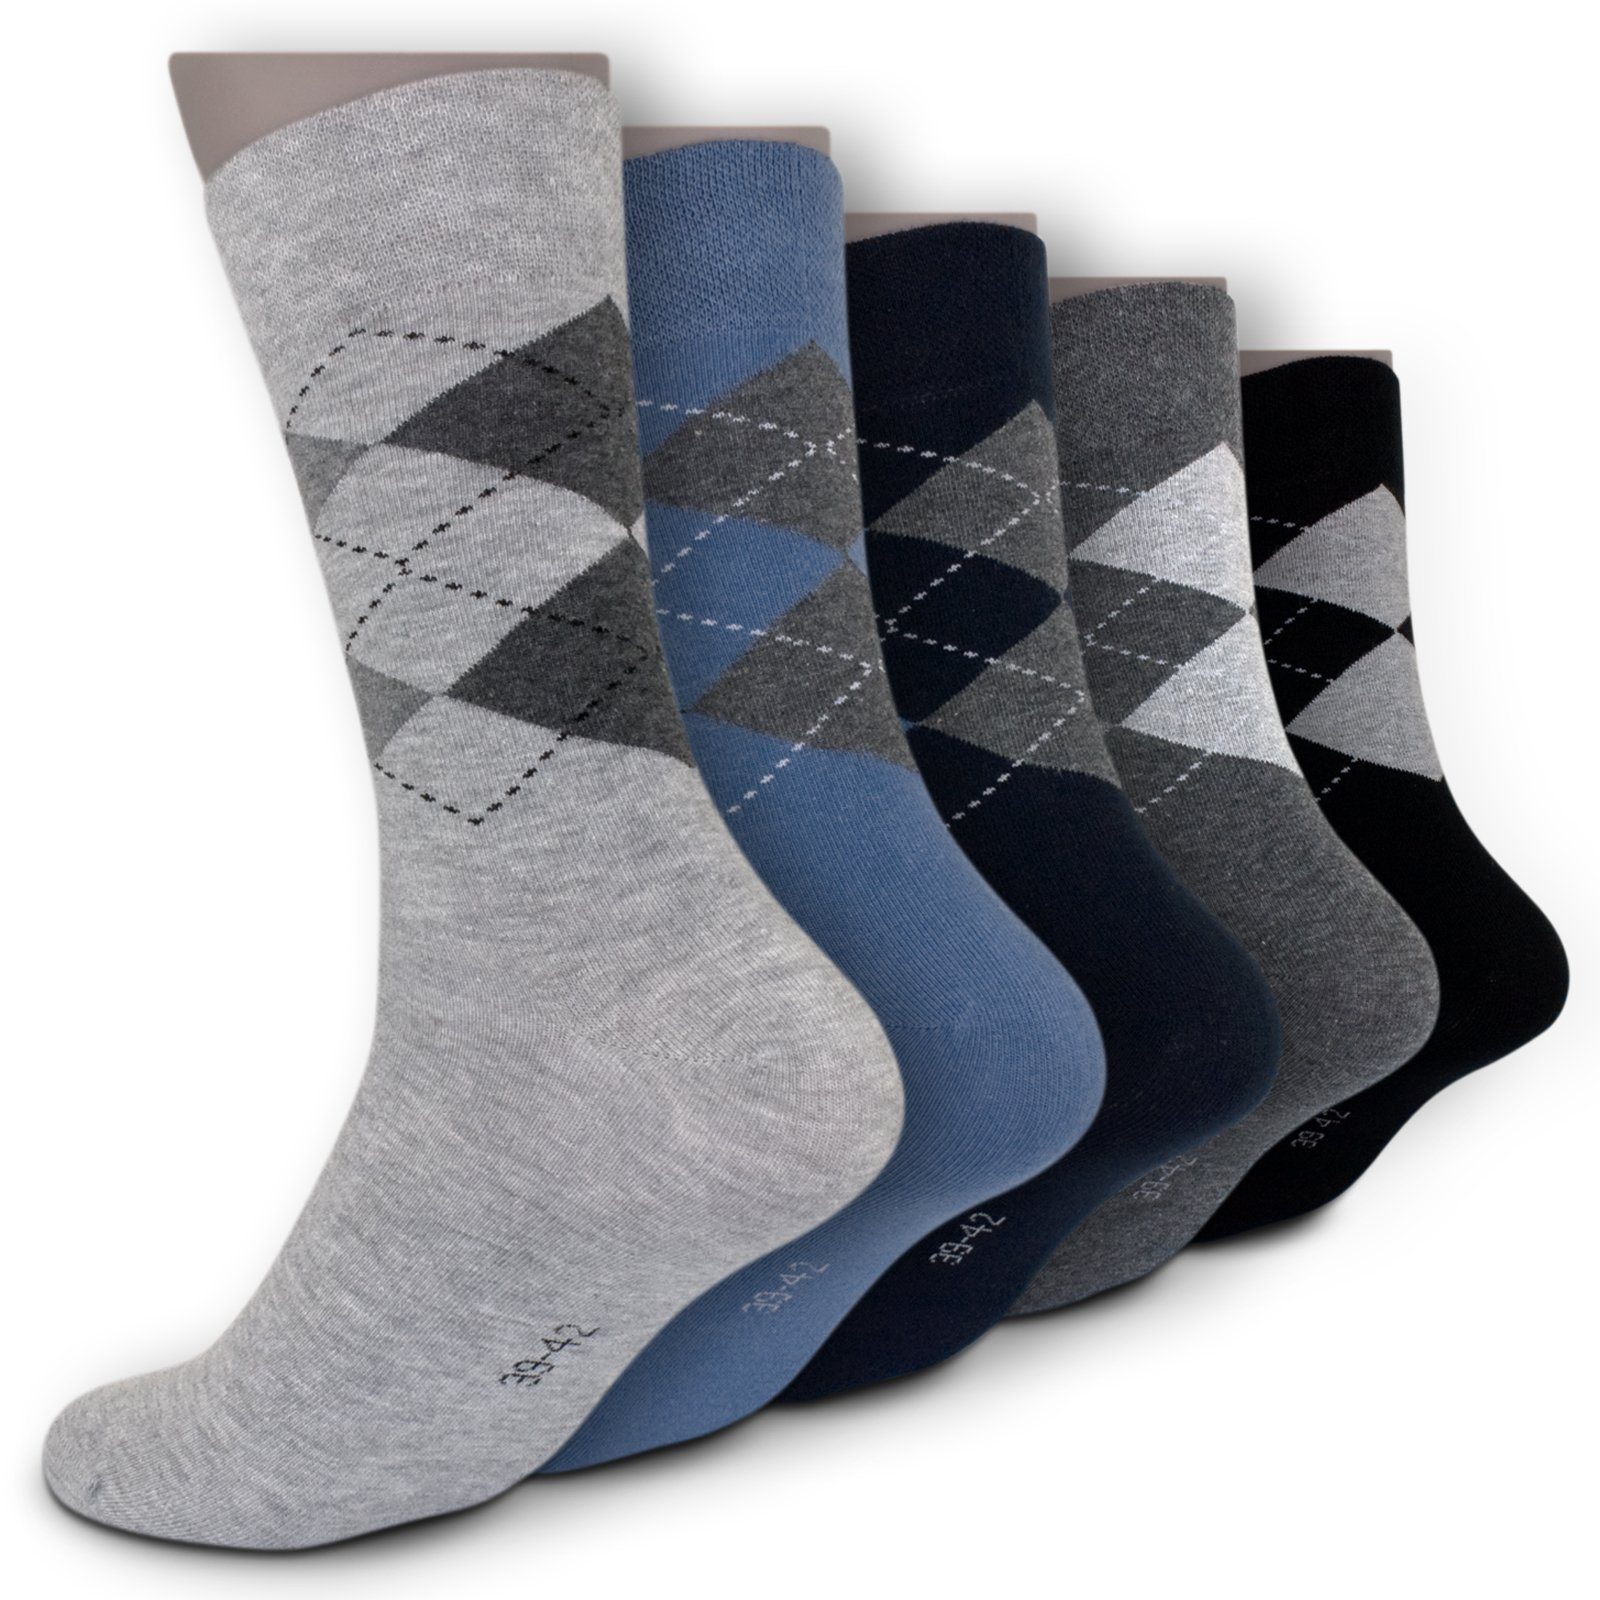 Die Sockenbude Freizeitsocken JACQUARD (Bund, blau) Komfortbund ohne grau Gummi mit 5-Paar, schwarz